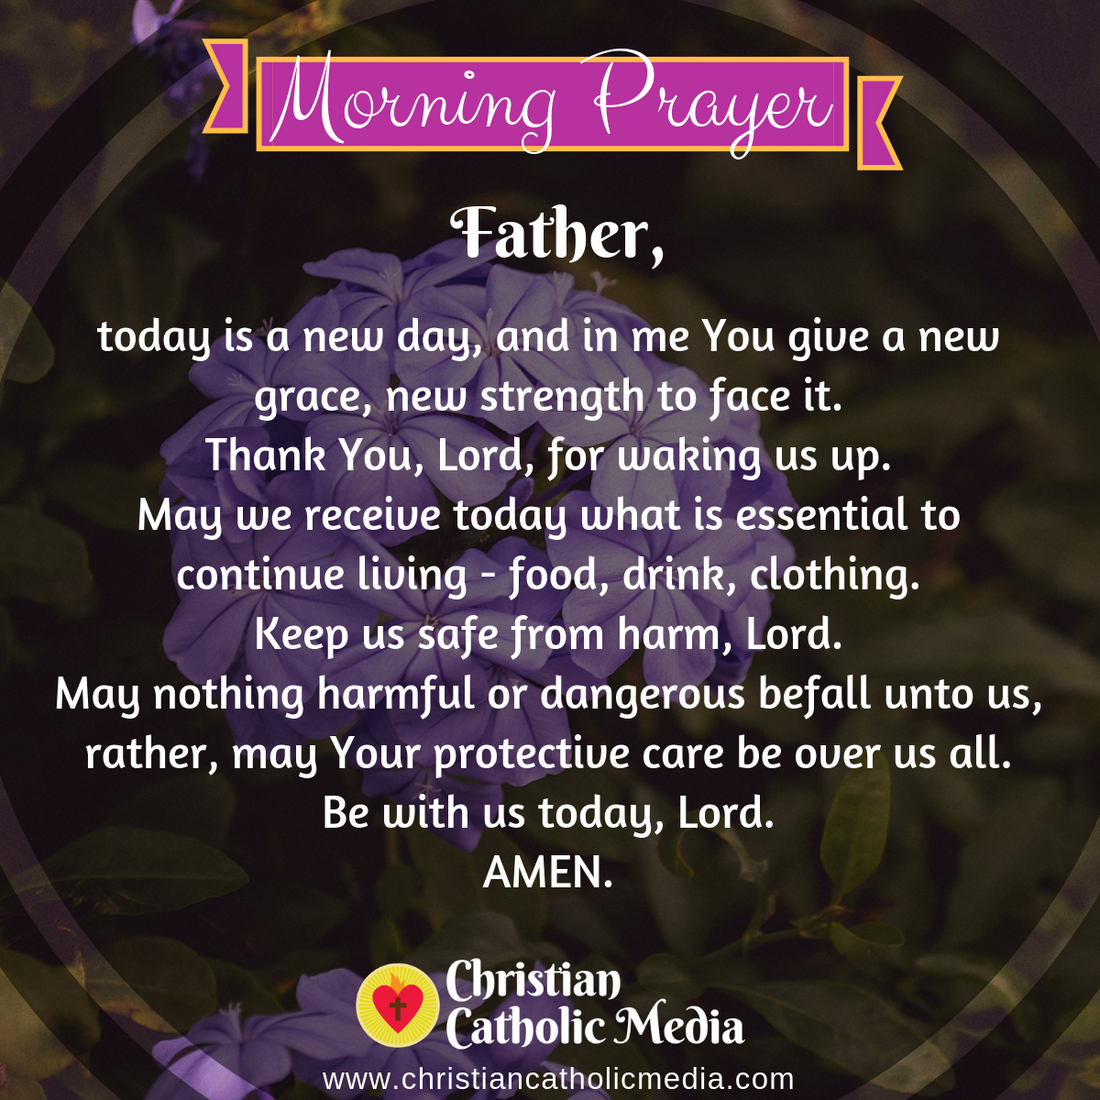 Morning Prayer Catholic Tuesday 5-12-2020